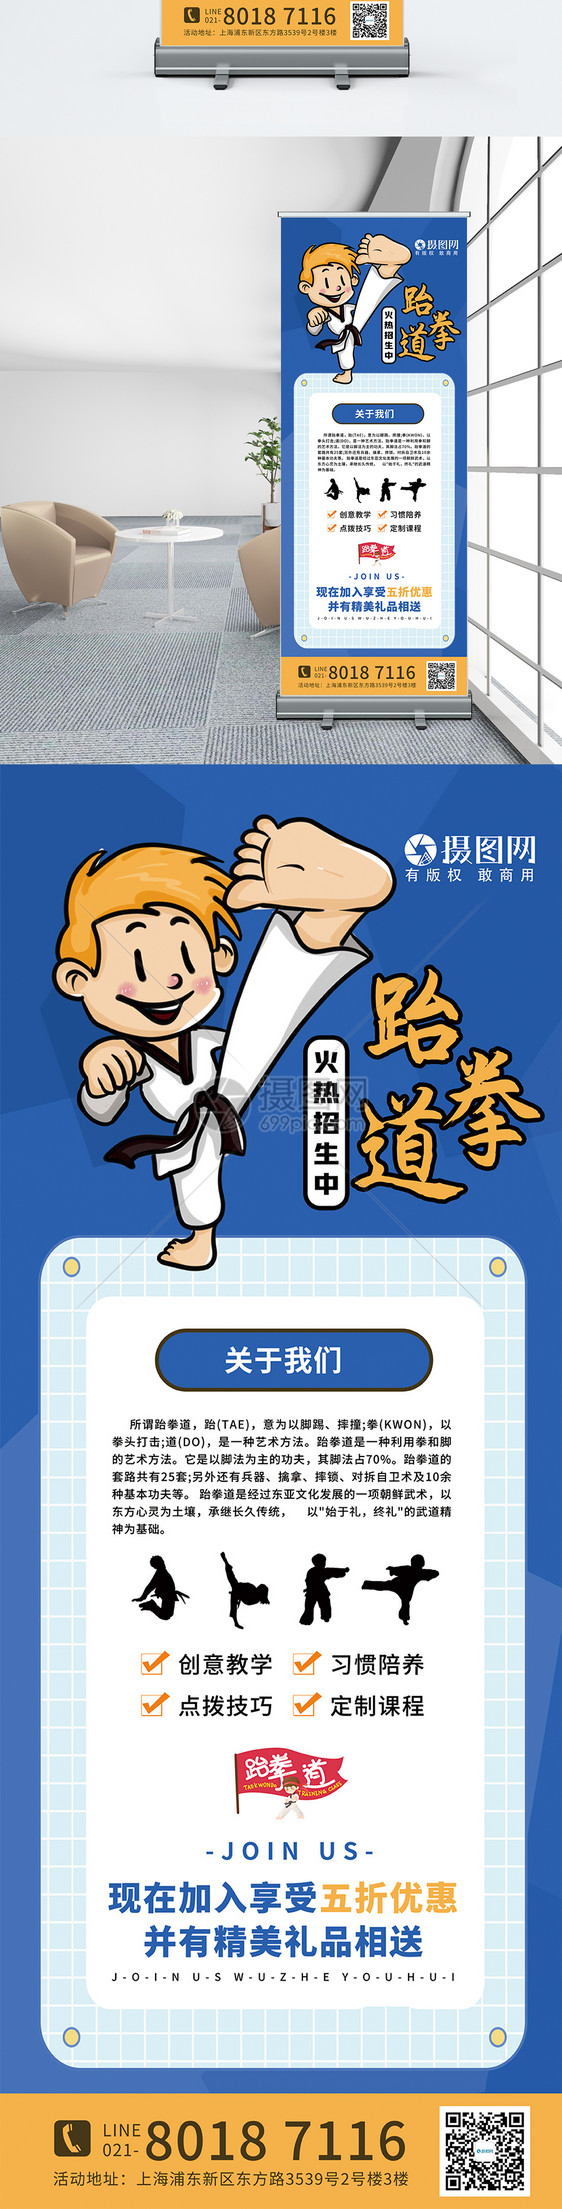 跆拳道培训宣传x展架图片